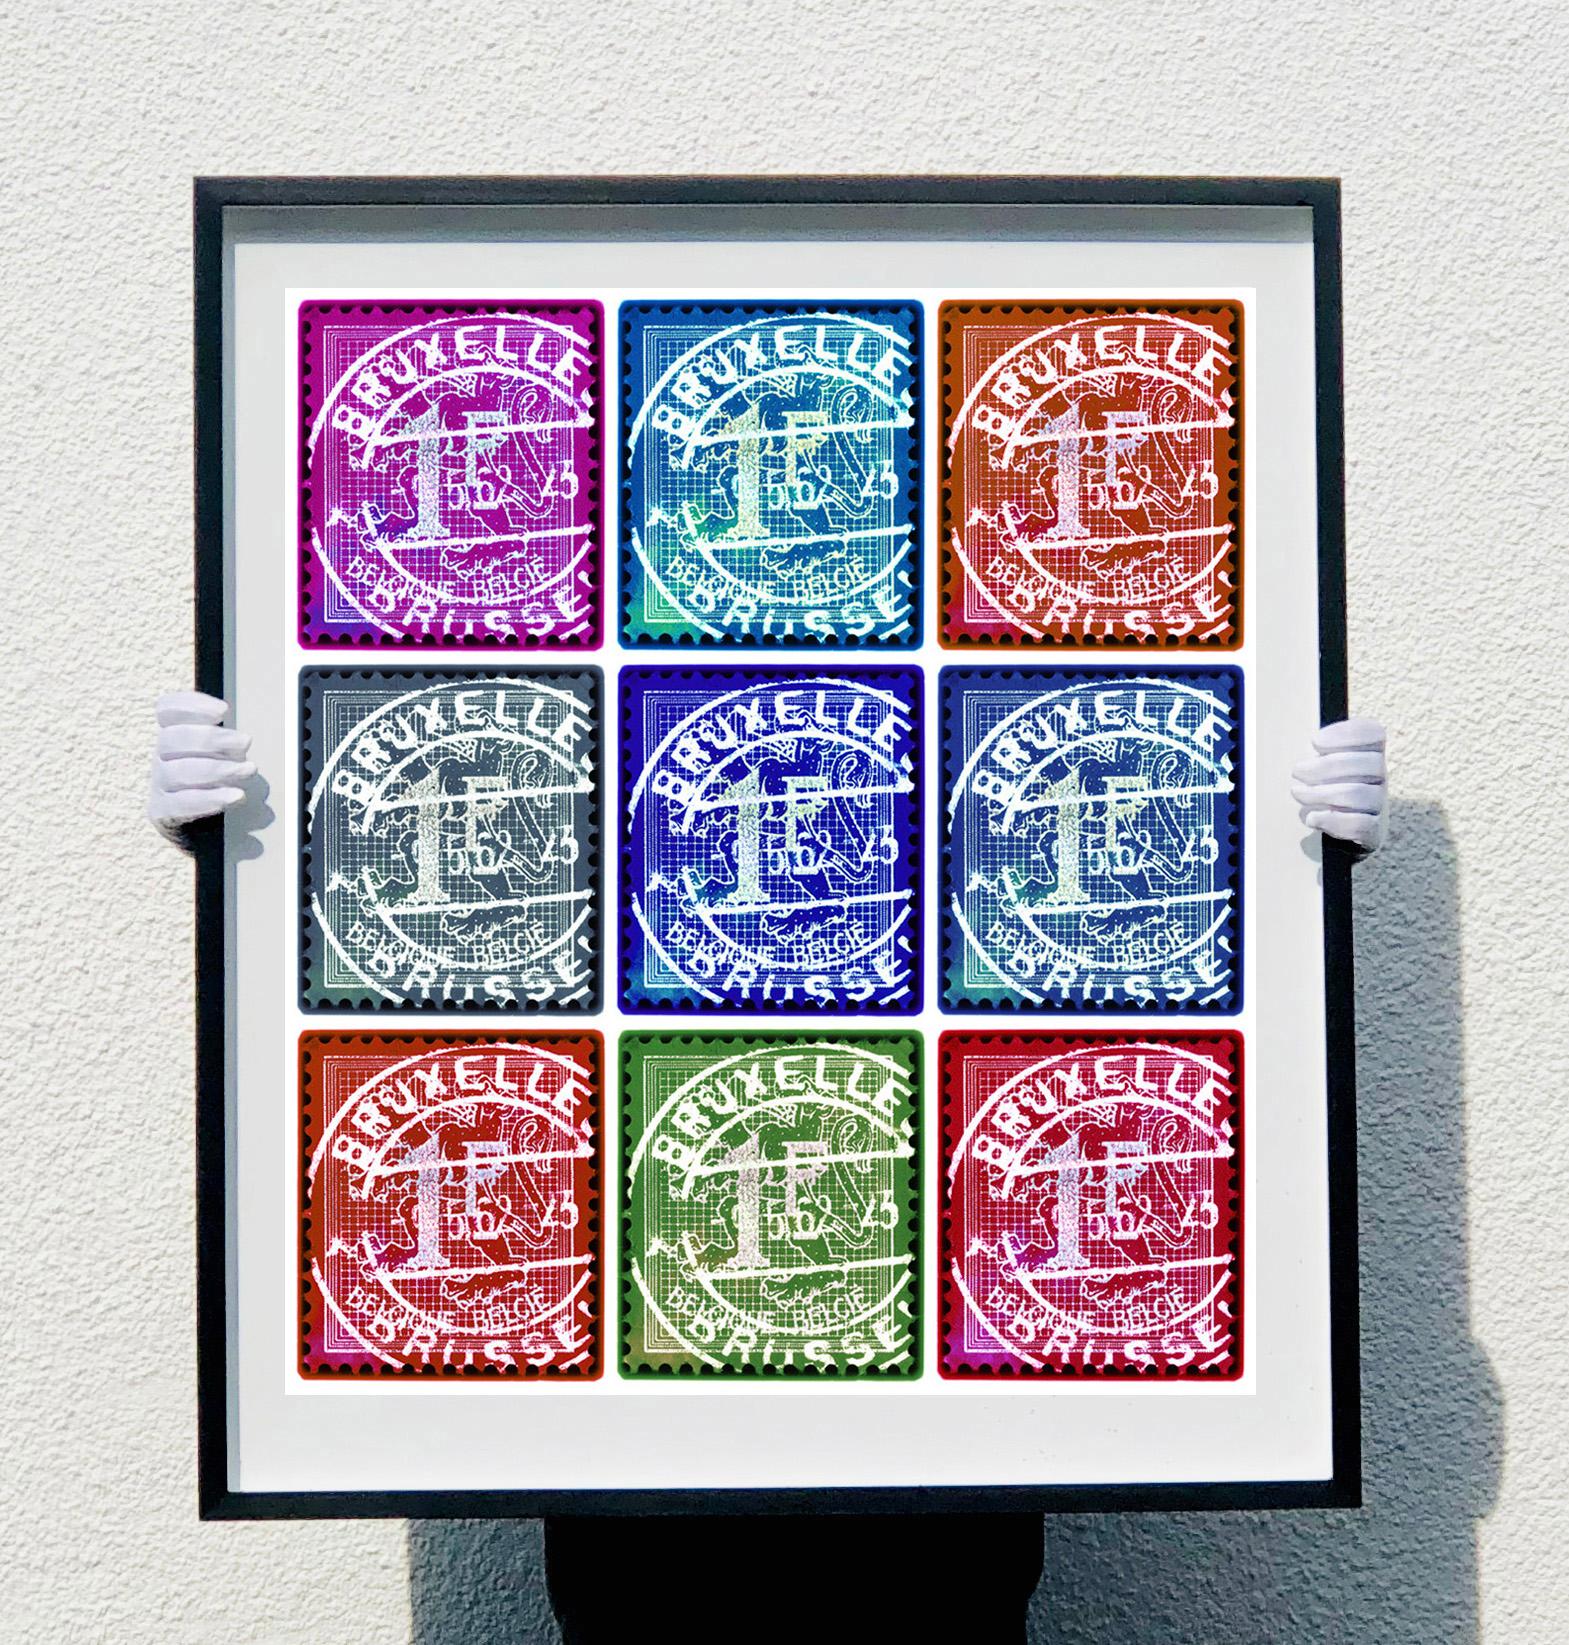 Collection de timbres, lion des Flandres (tampilles de Bruxelles en mosaïque multicolore)  - Print de Heidler & Heeps